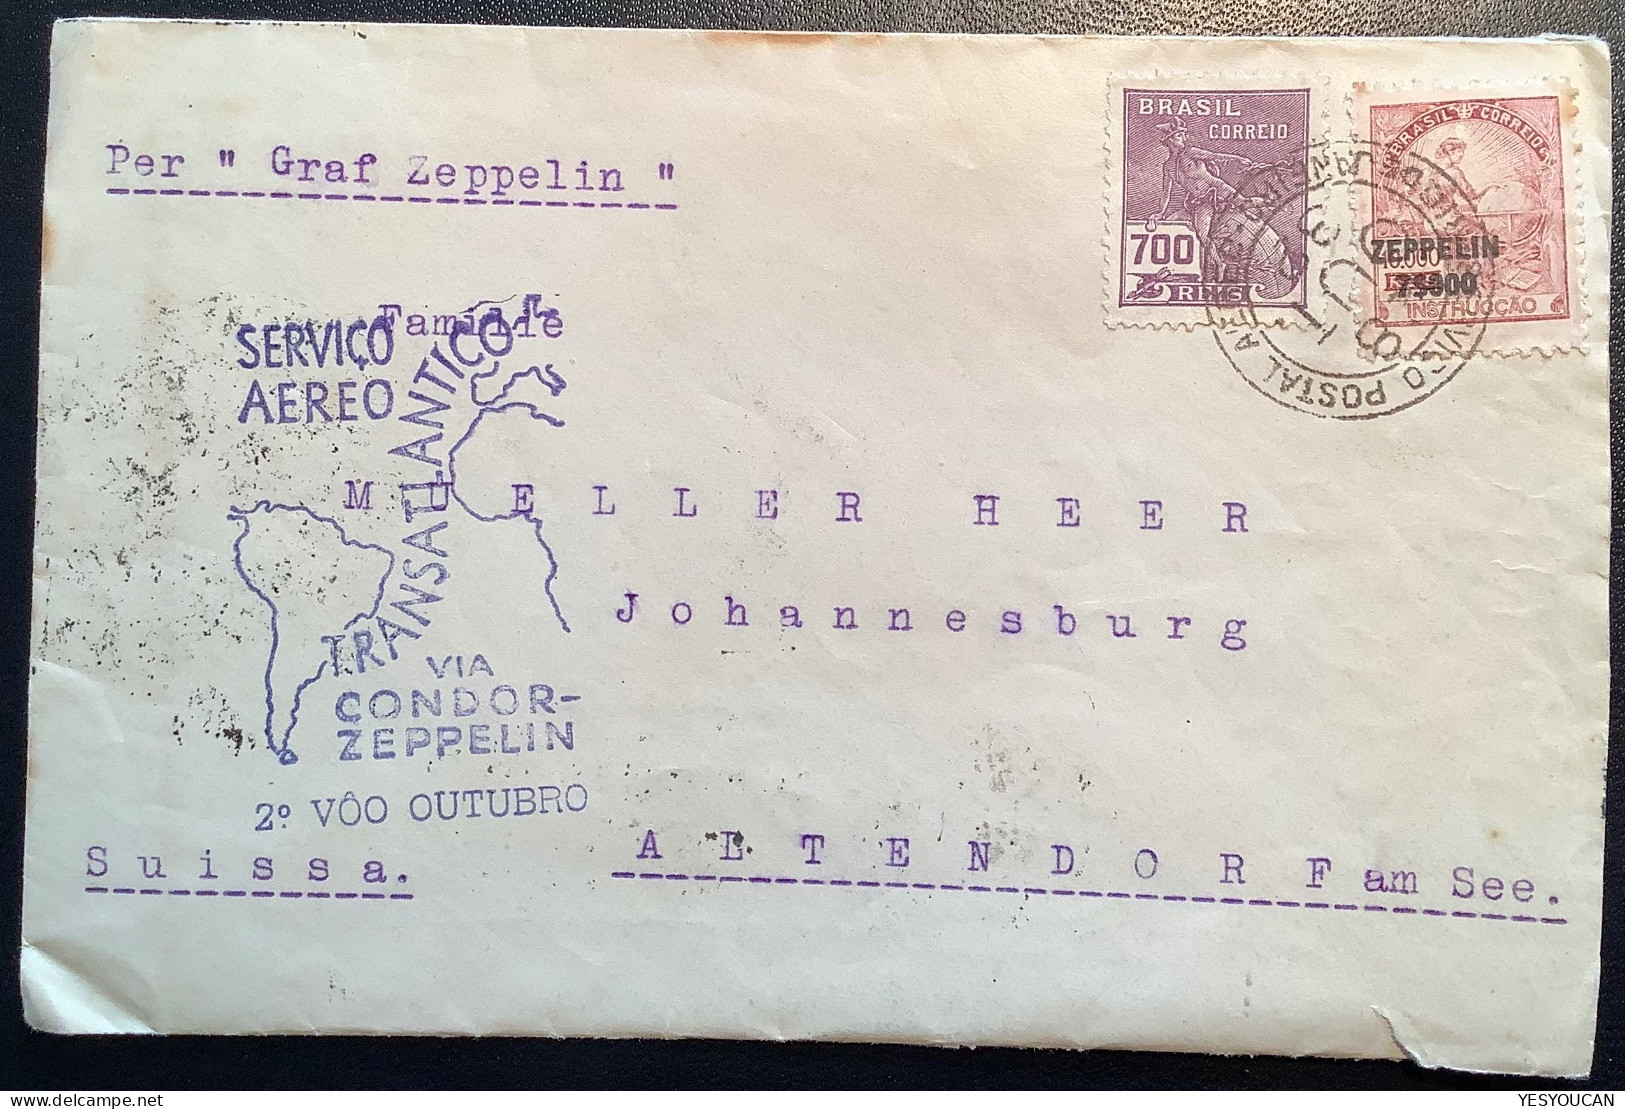 CONDOR-ZEPPELIN1932 Flight„Pedro Elmer Petropolis“cover>Müller-Heer, Altendorf SZ Schweiz (Brazil Luftpost Brief Schweiz - Luftpost